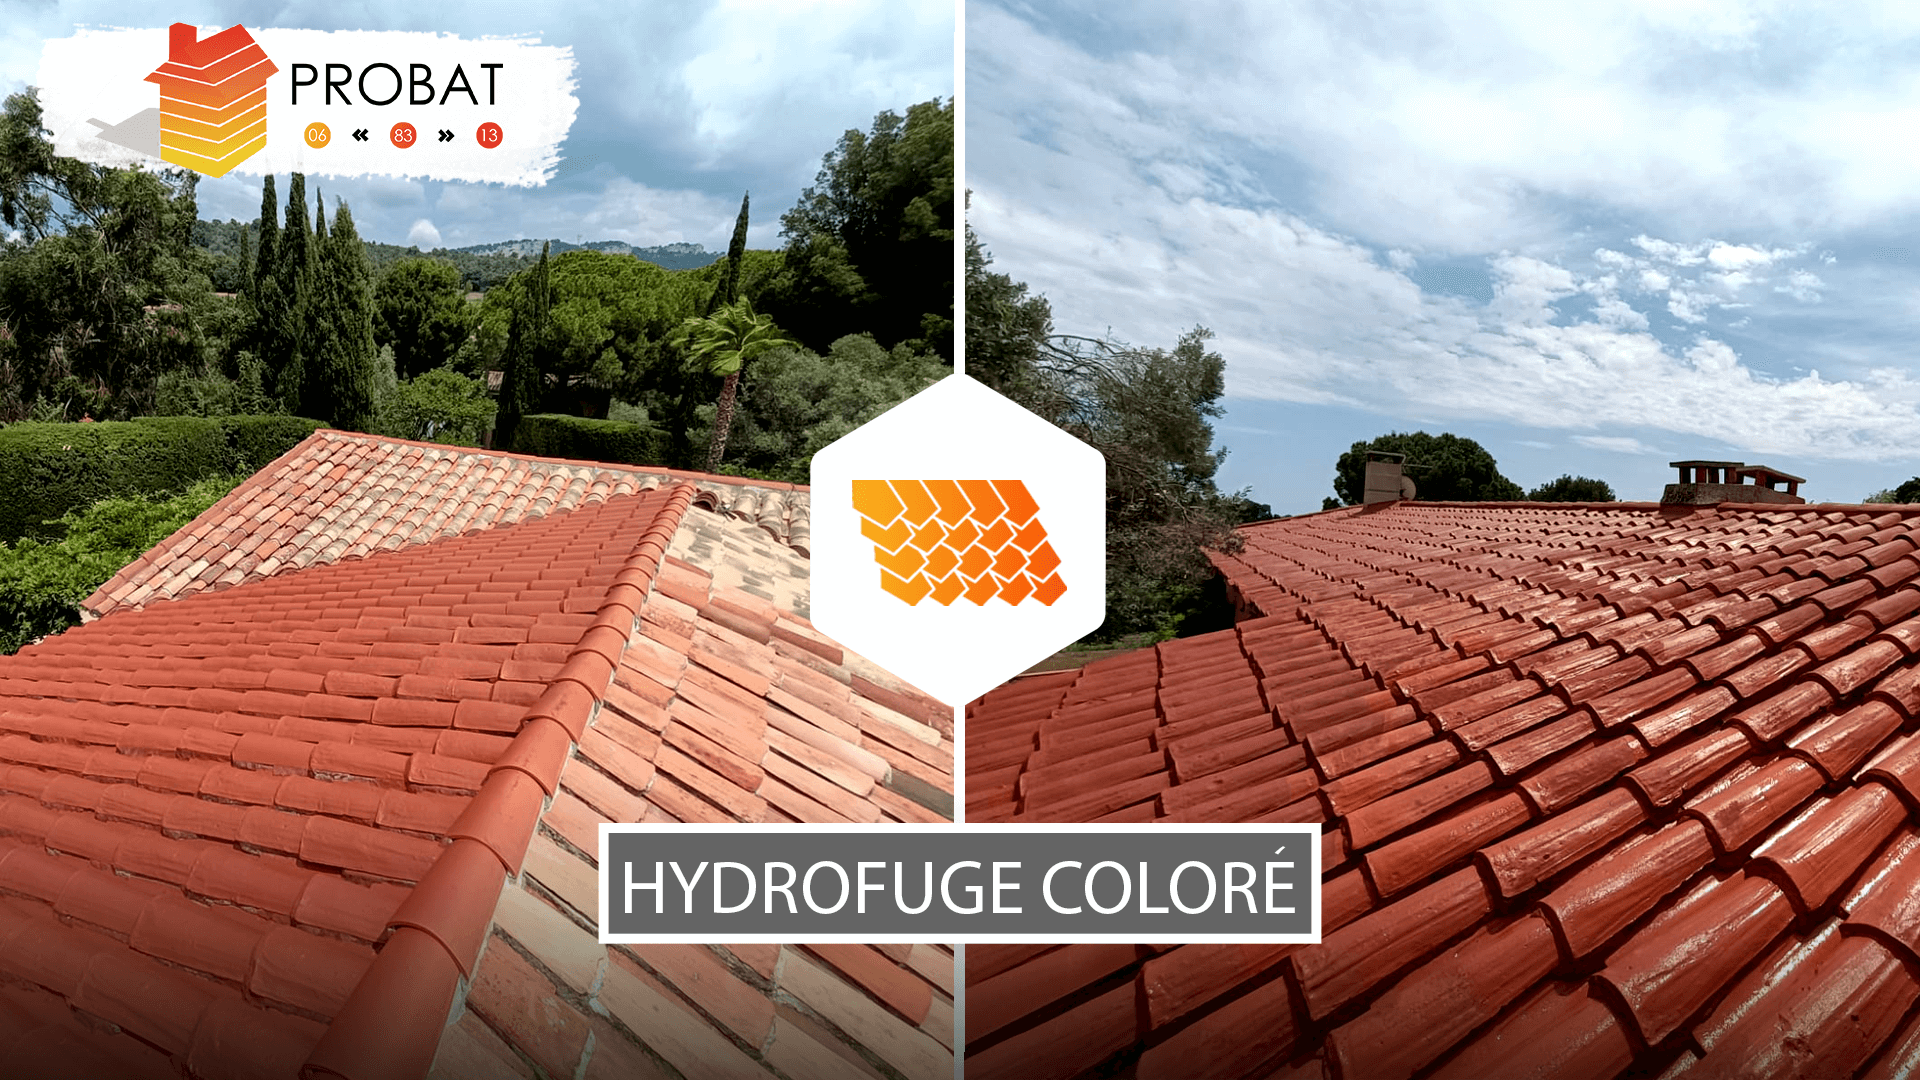 Nettoyage de façade avec traitement hydrofuge incolore à Aubagne - Probat  83 - Amélioration de l'habitat dans le 06-13 et 83